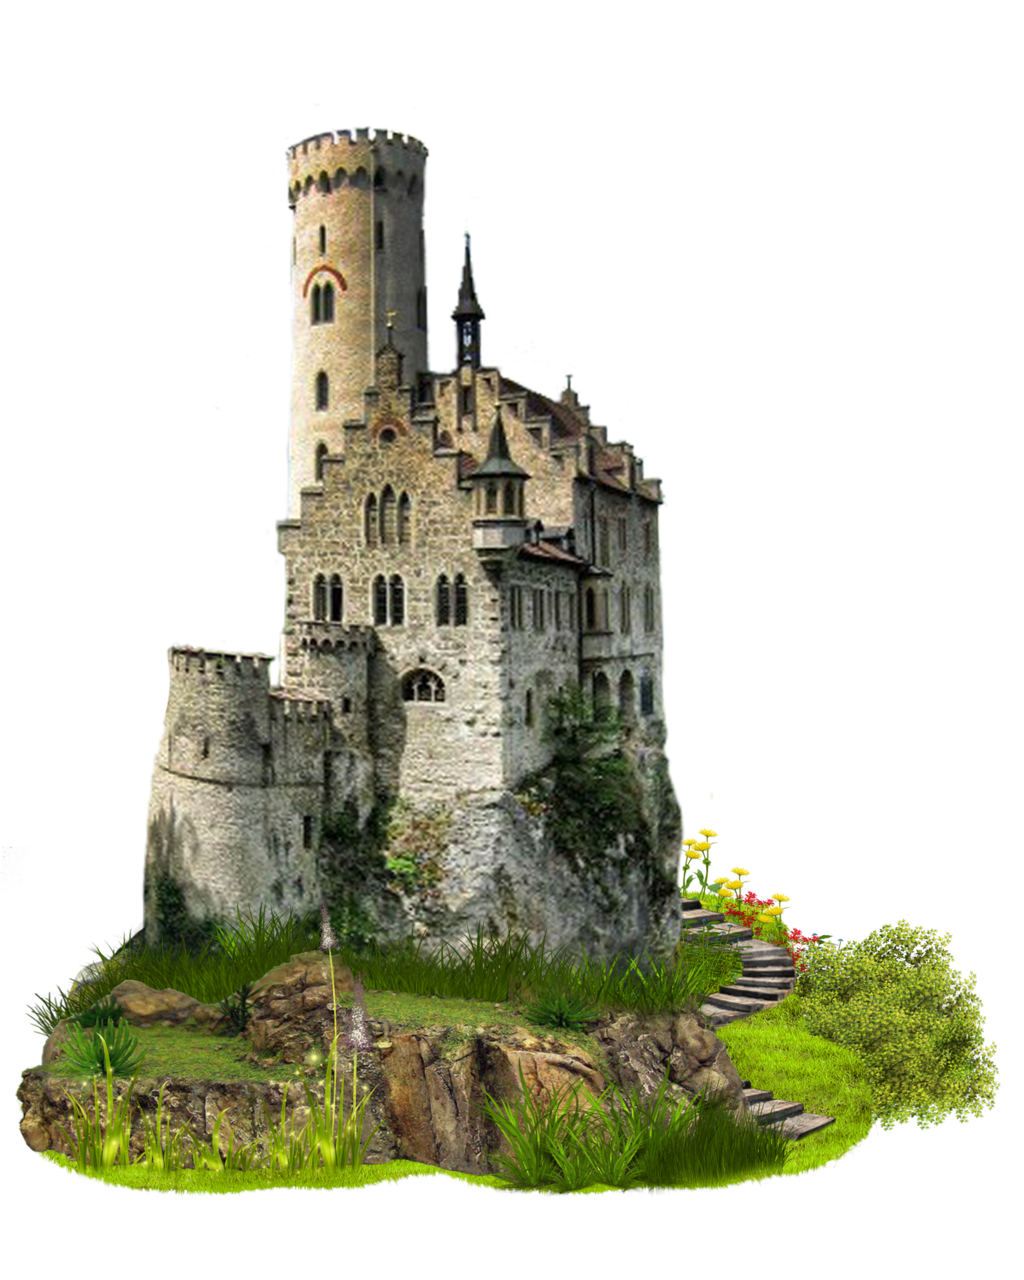 Immagine Trasparente del vecchio castello del castello